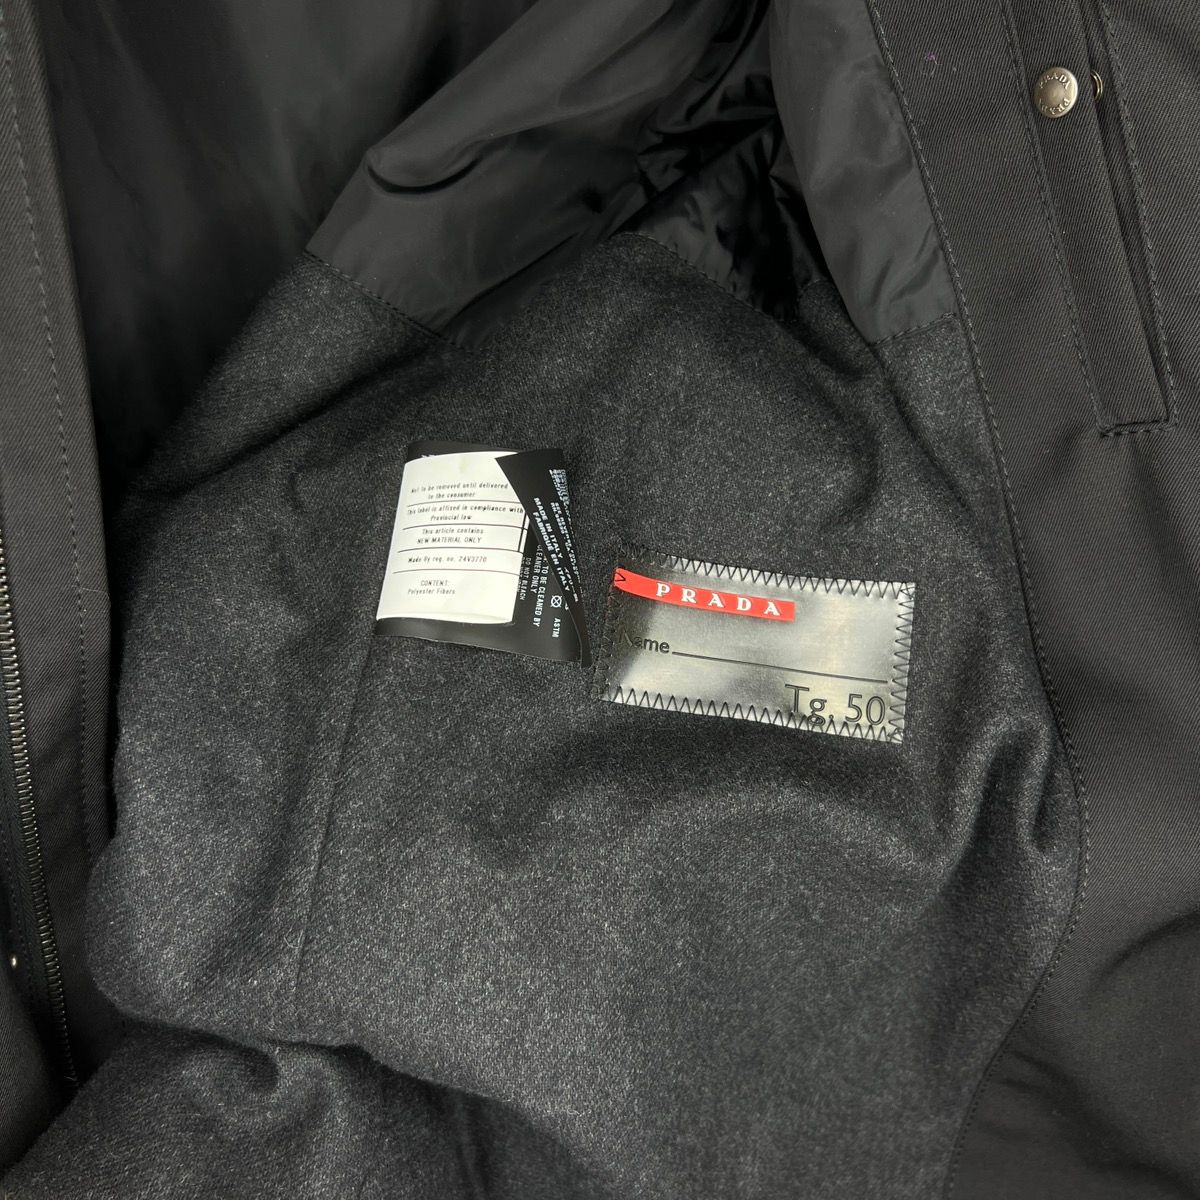 Prada Prada Milano Military Jacket Belted Coat Black Wool Designer Size US M / EU 48-50 / 2 - 10 Thumbnail